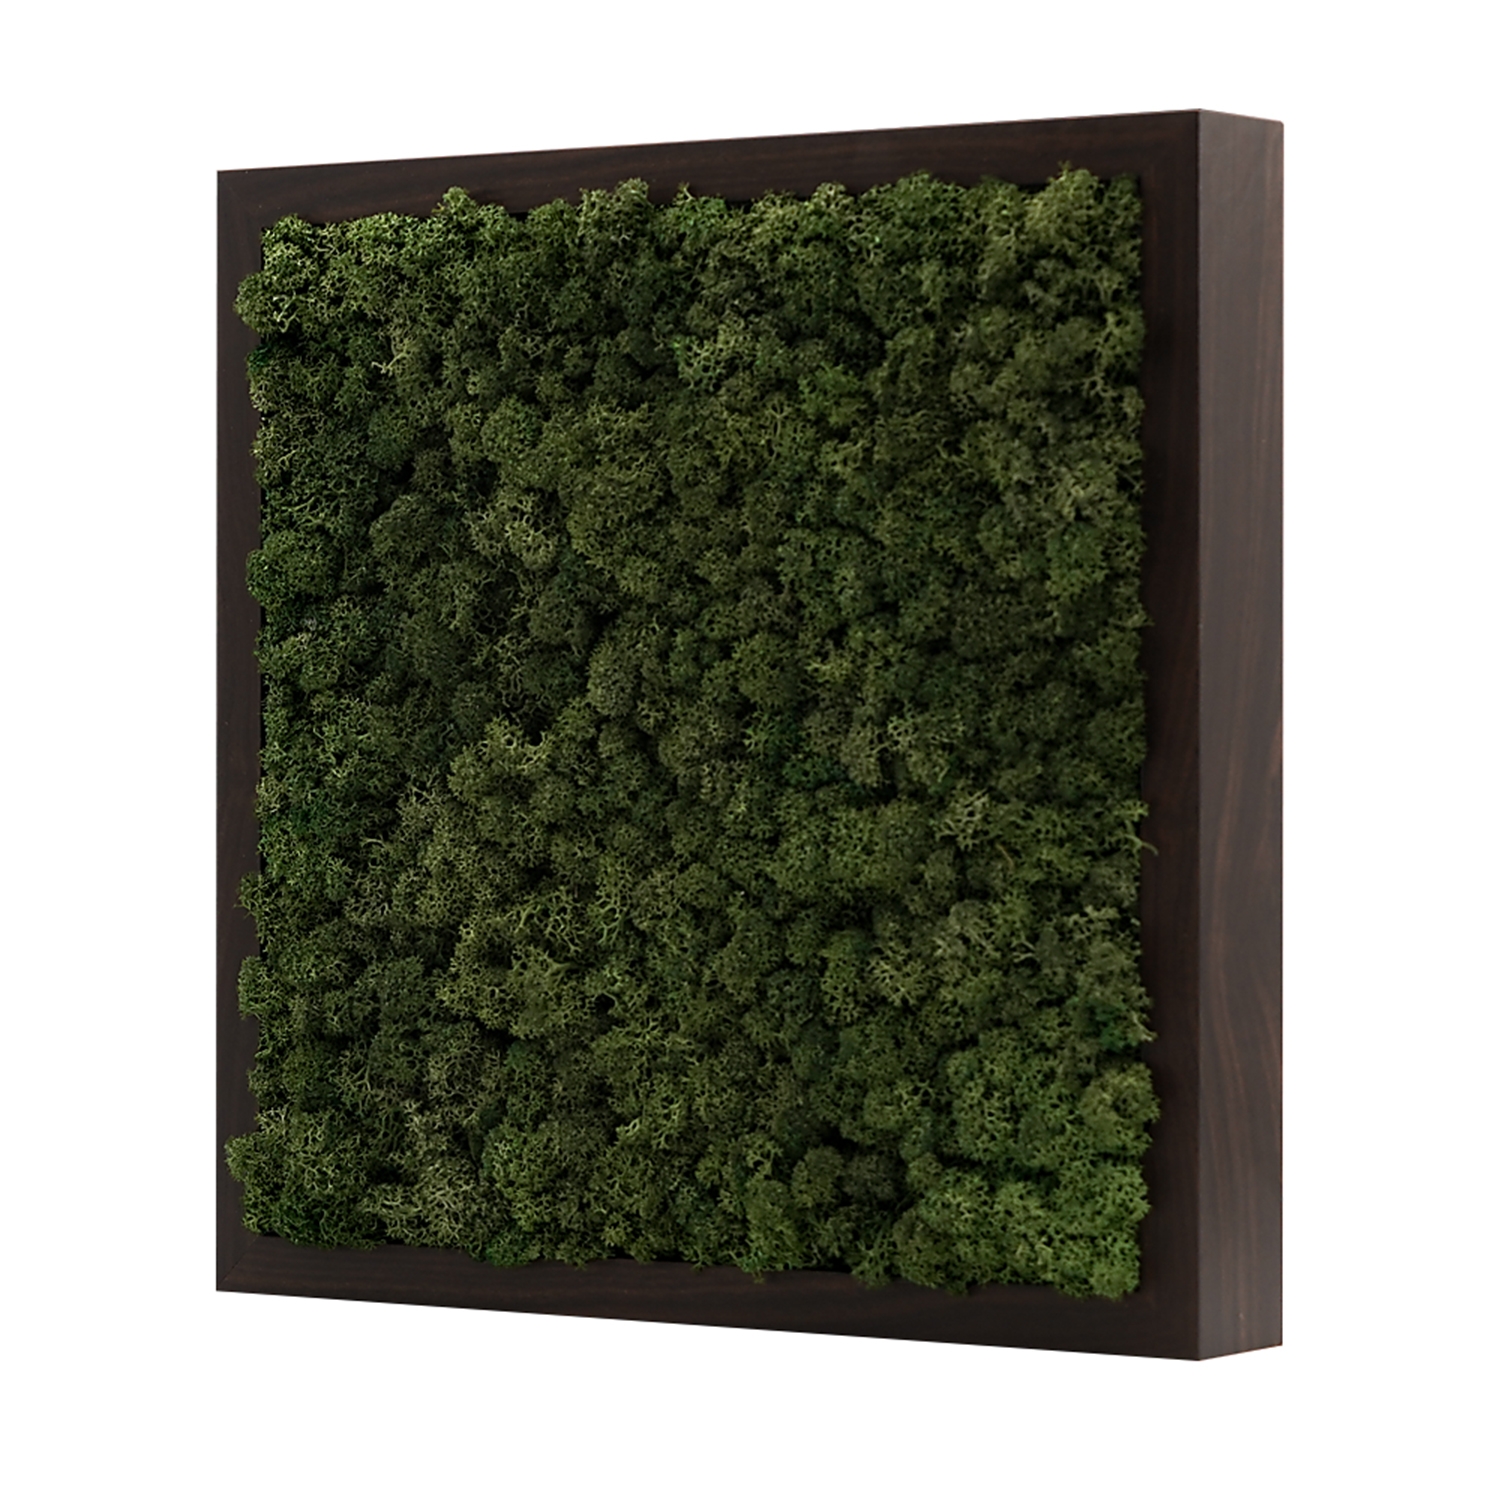 스칸디아모스액자 프라모 프레임_월넛 ( 25색상 )실내 공기정화식물 벽면인테리어소품 천연이끼 스칸디아모스 식물액자 플랜테리어